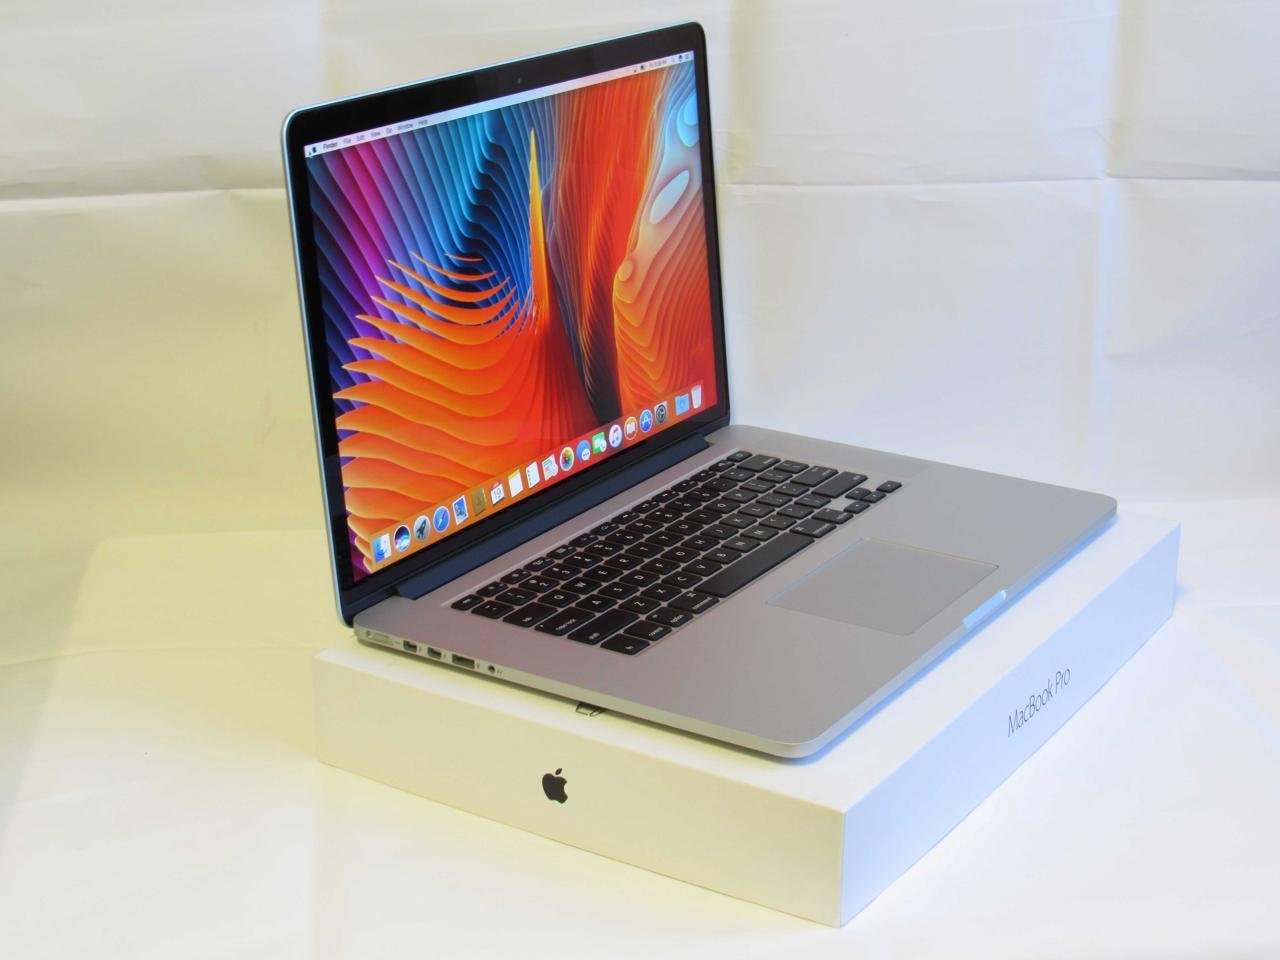 apple macbook pro 2011 15 inch